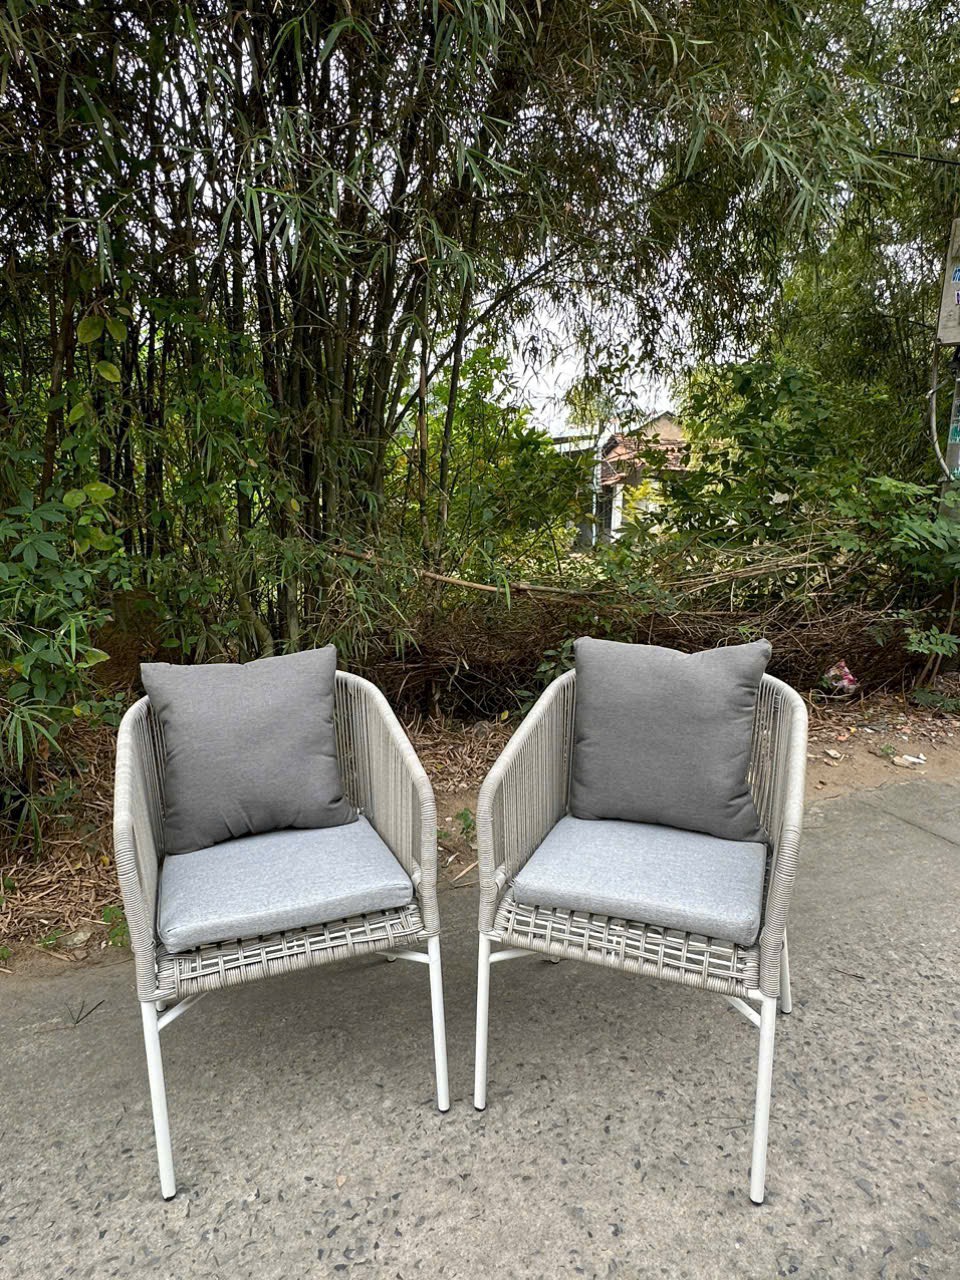 Bộ ghế mây Juno Sofa sân vườn Resort Garden Chair Outdoor